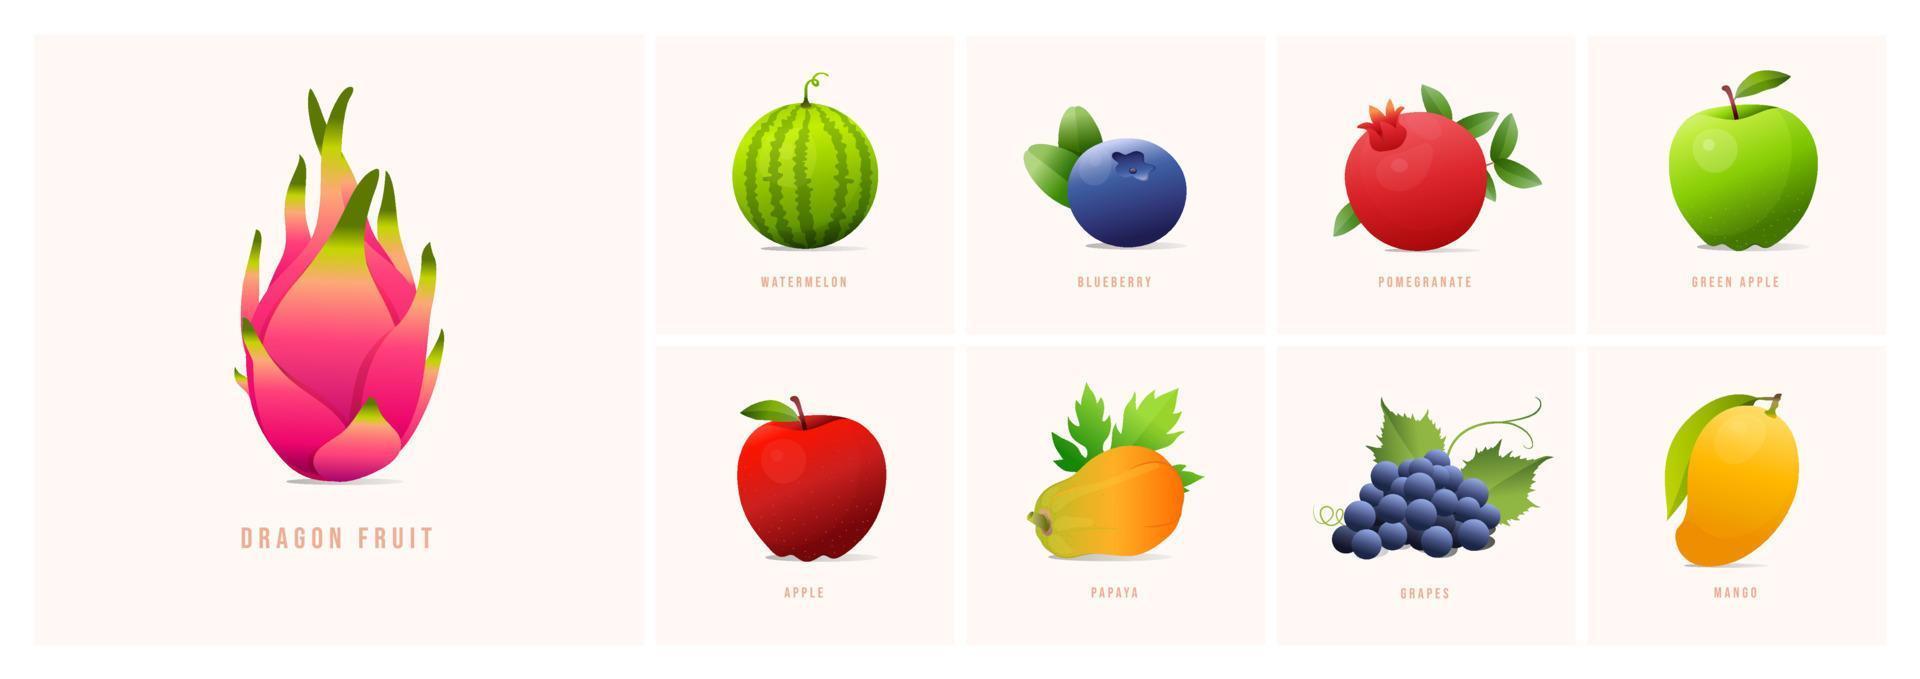 ensemble de fruits, illustrations vectorielles de style moderne. raisins, pastèque, myrtille, grenade, papaye, pomme, mangue, pomme verte, fruit du dragon, etc. vecteur